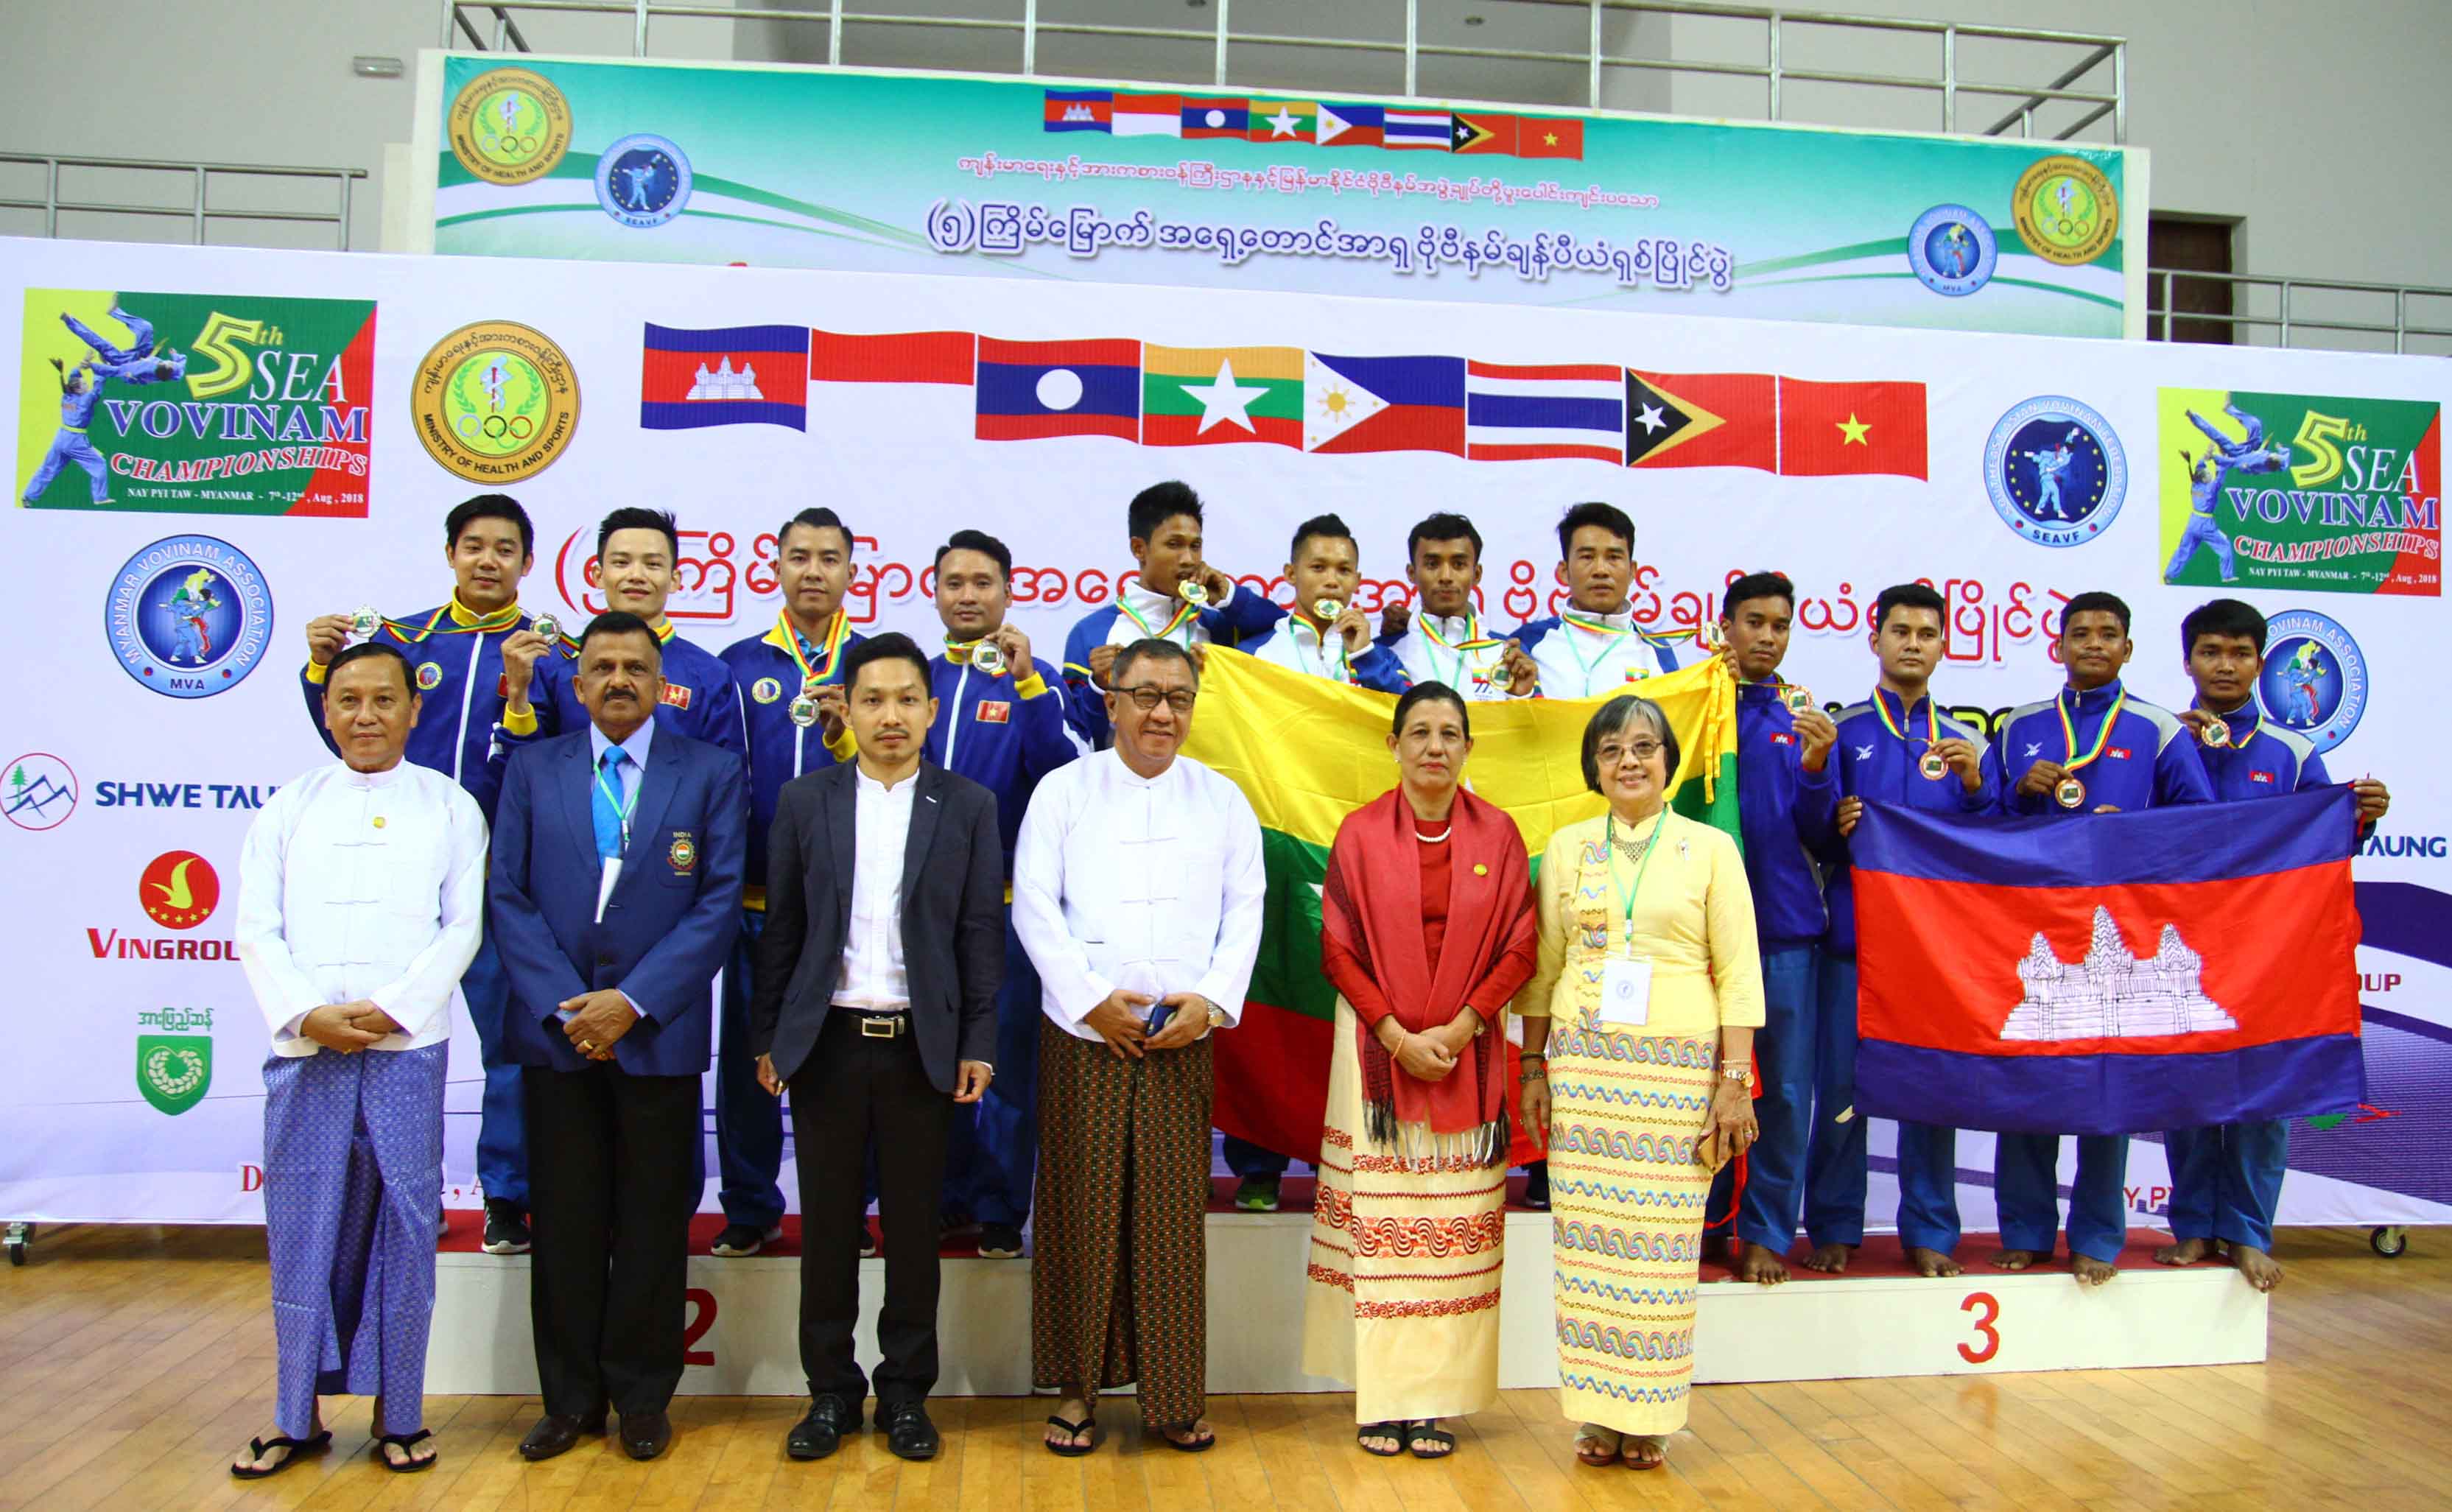 Hình ảnh: Giải vô địch Vovinam Đông Nam Á 2018: Việt Nam giành 3 HCV ngày khai cuộc số 6